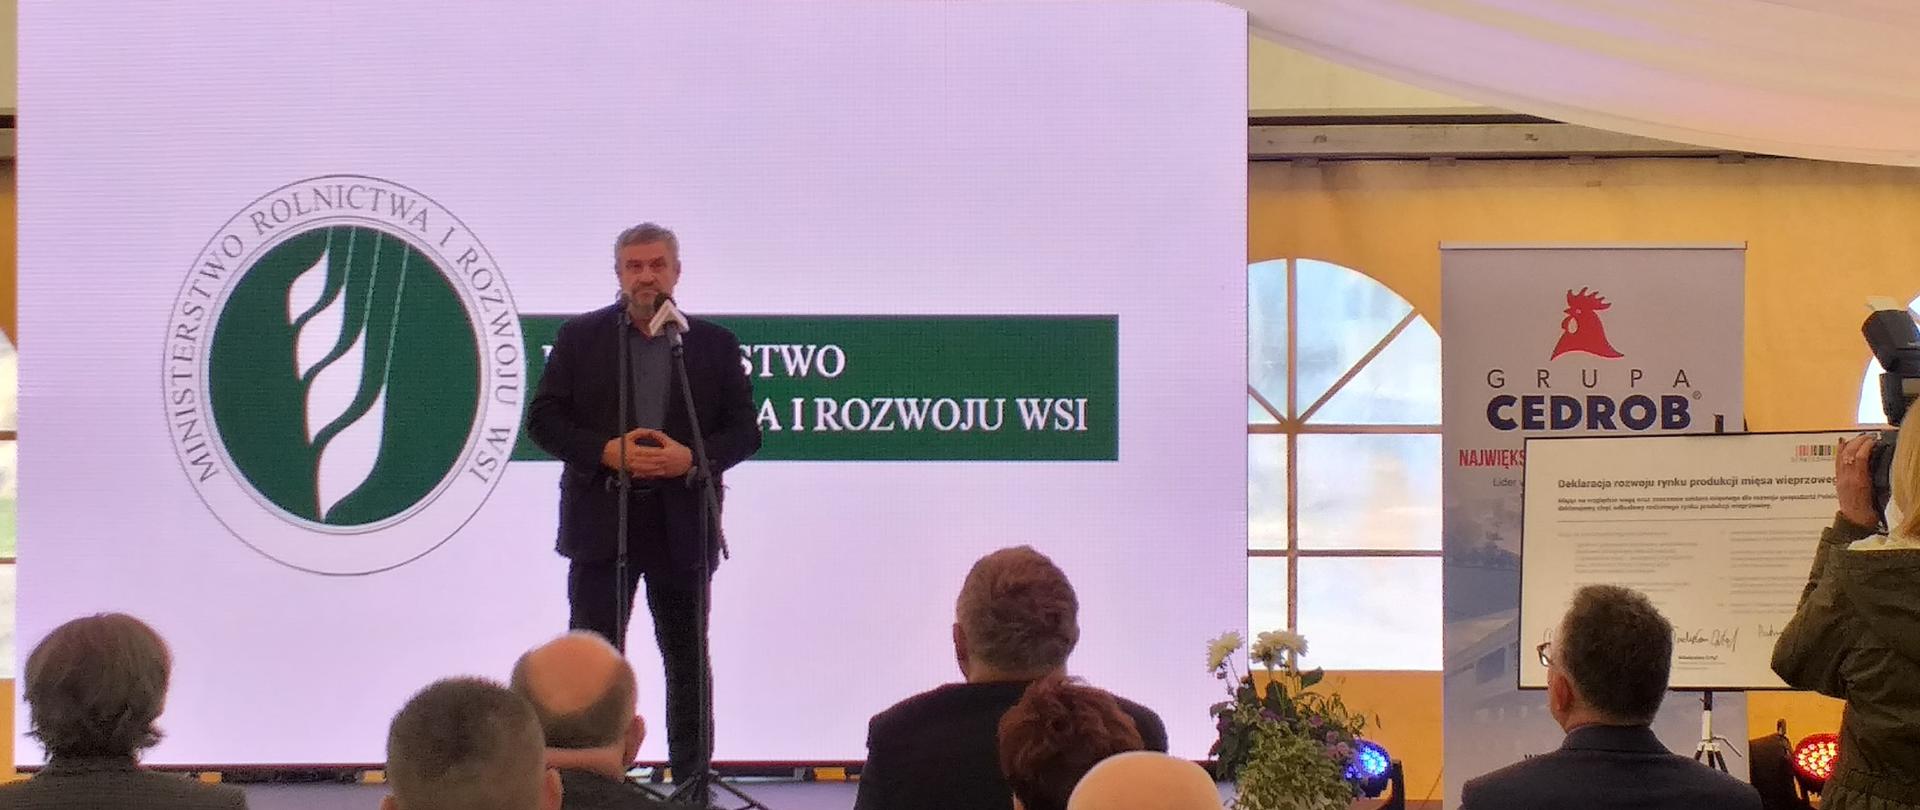 Minister J. K. Ardanowski podczas wystąpienia